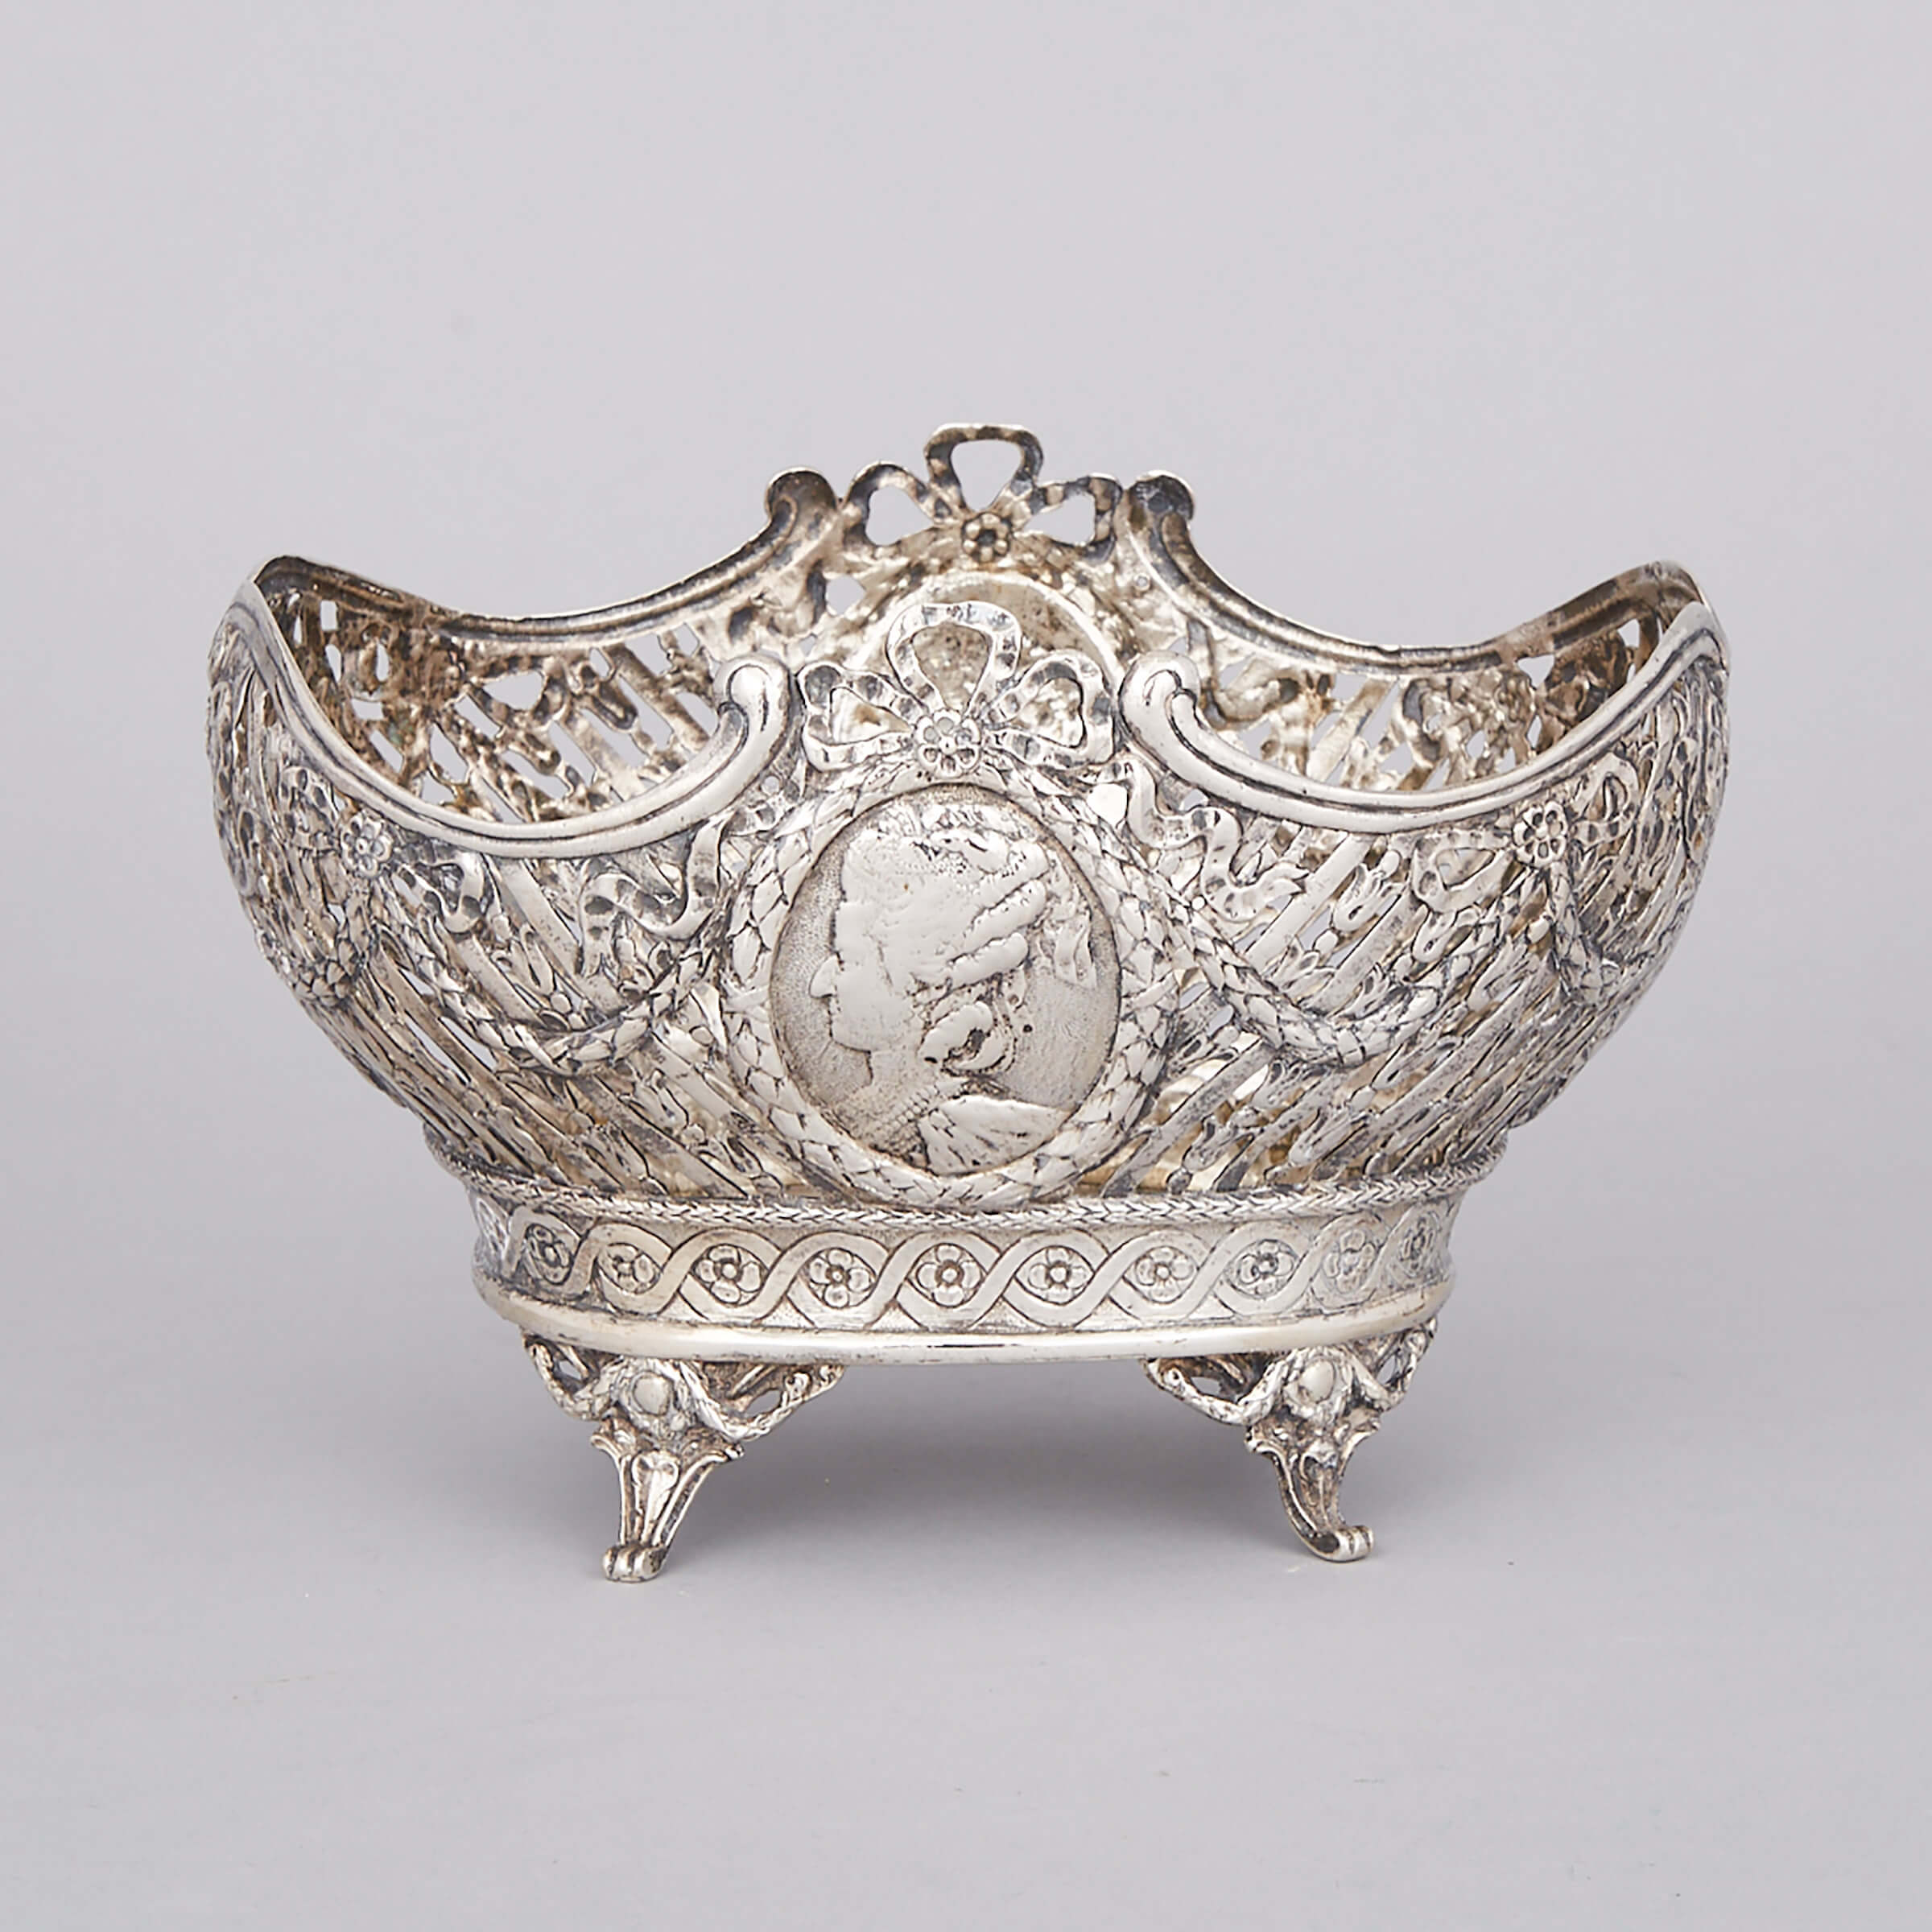 German Silver Pierced Basket, probably Georg Roth & Co., Hanau, c.1900